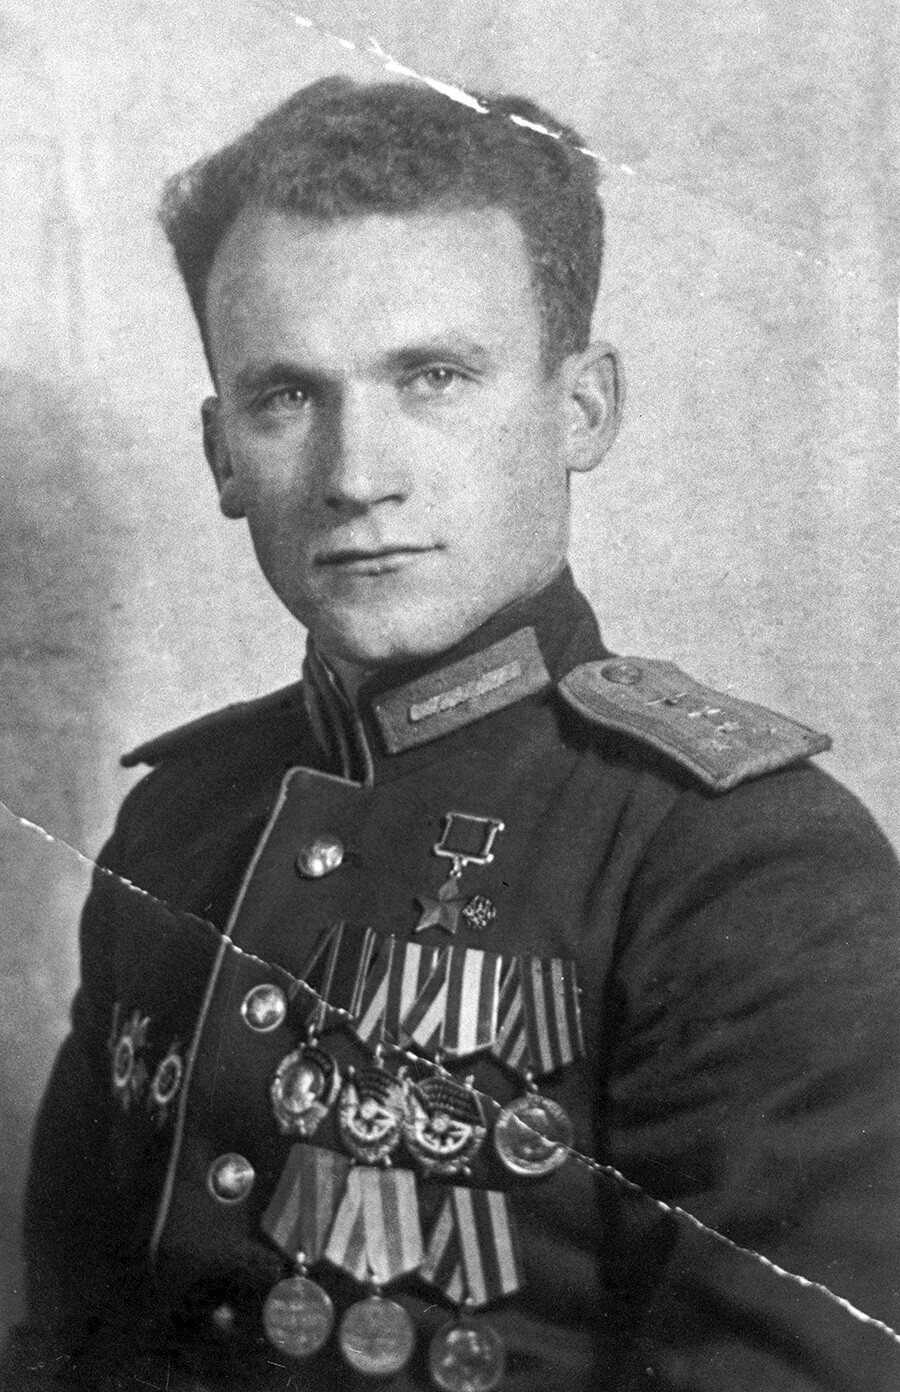 Vladimir Seregin

